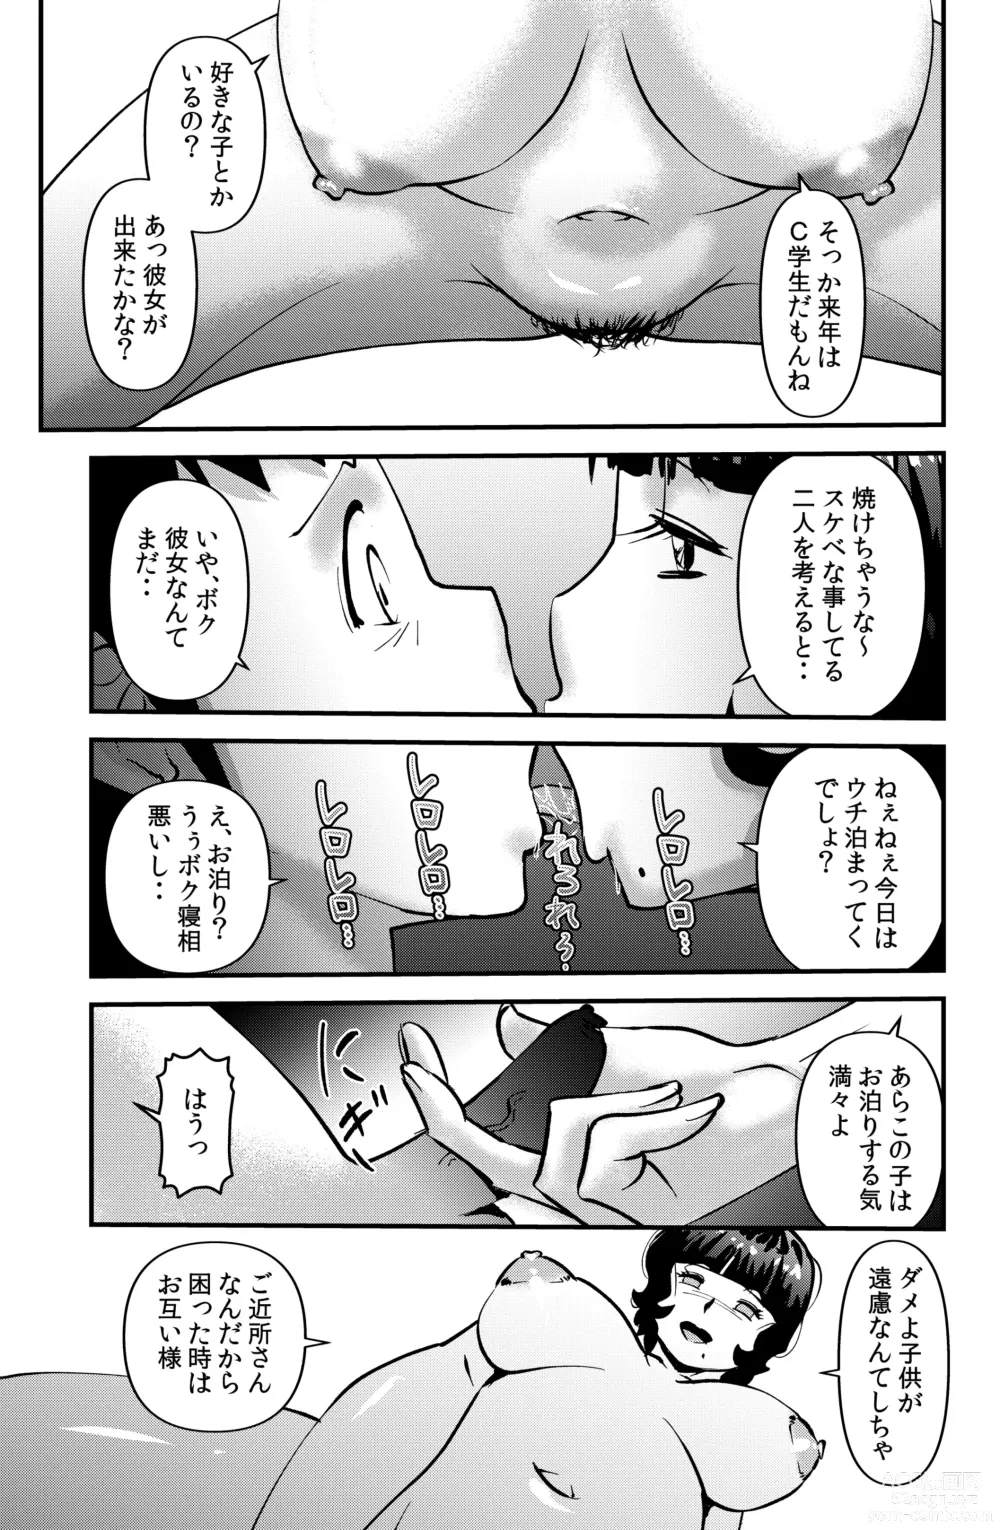 Page 7 of doujinshi Souda! Sensei de Ikou.